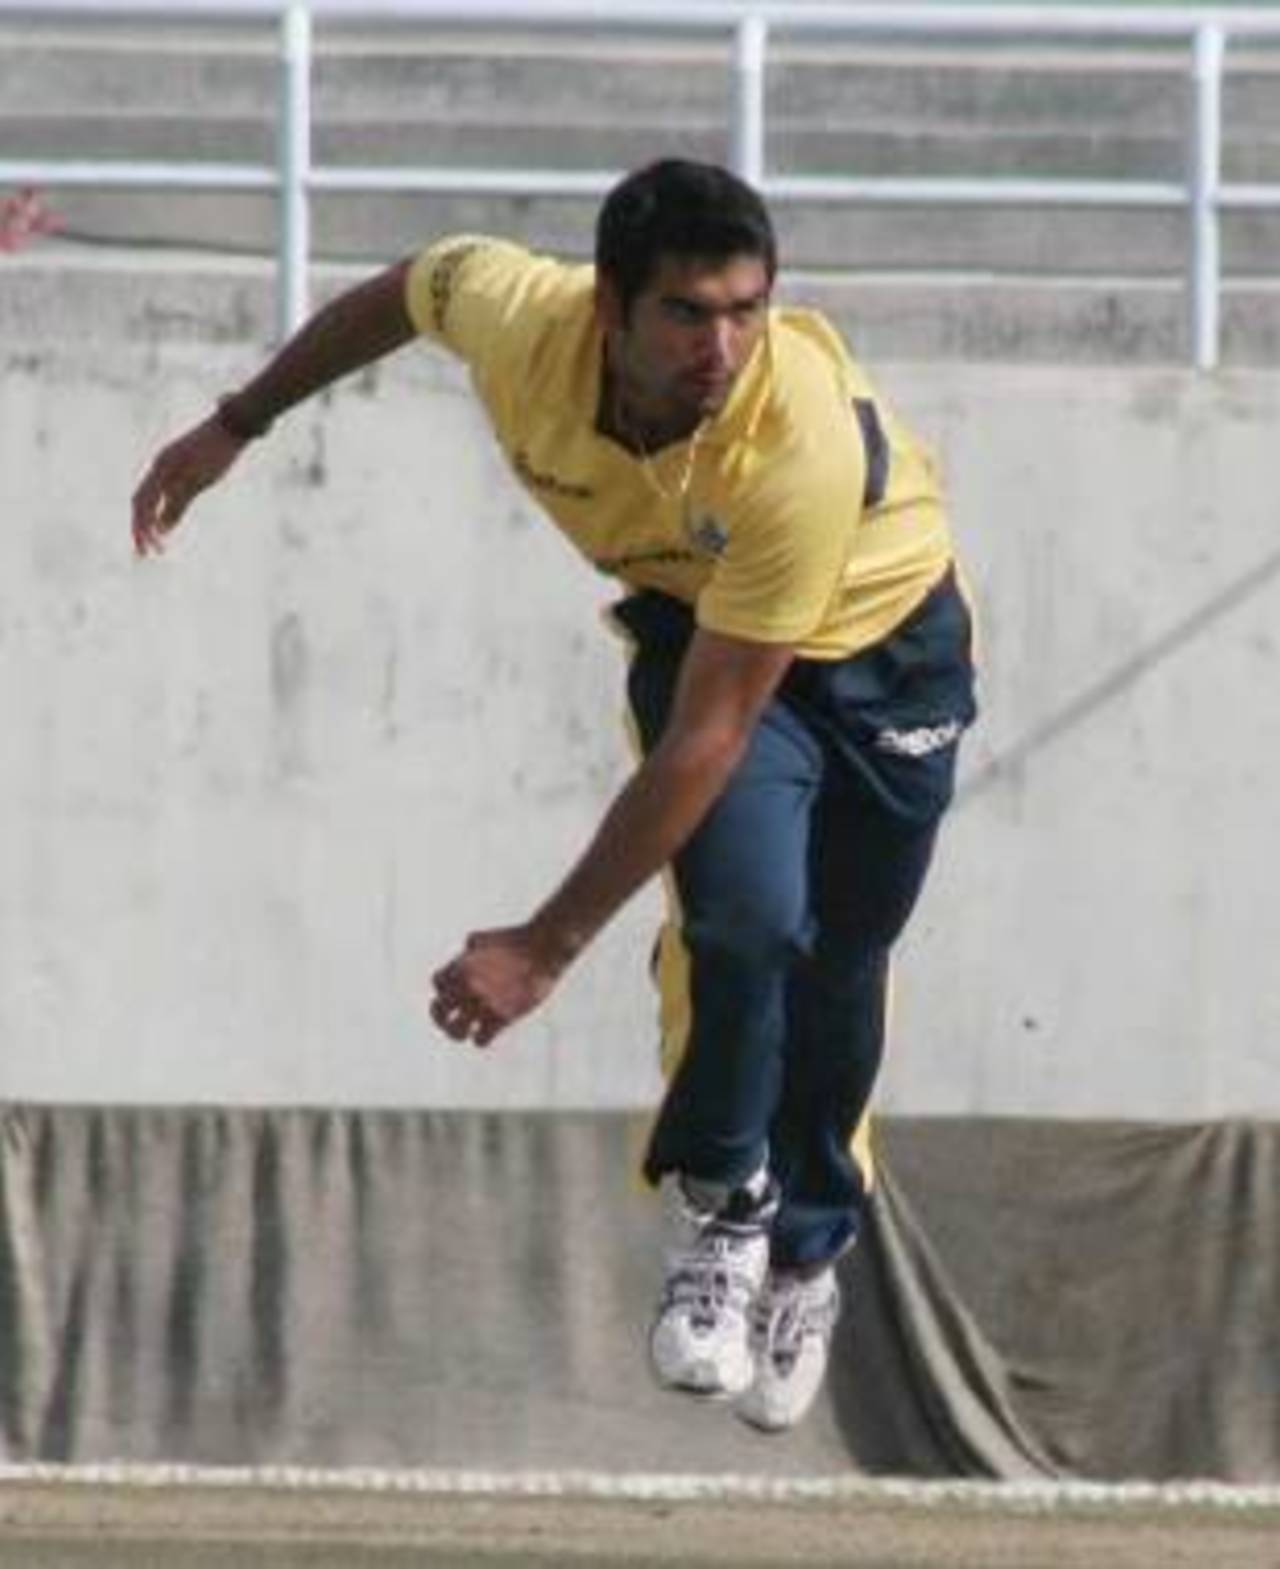 Pradeep Sangwan bowls against Punjab, Delhi v Punjab, Ranji one-dayers, Dharamsala, February 17, 2009